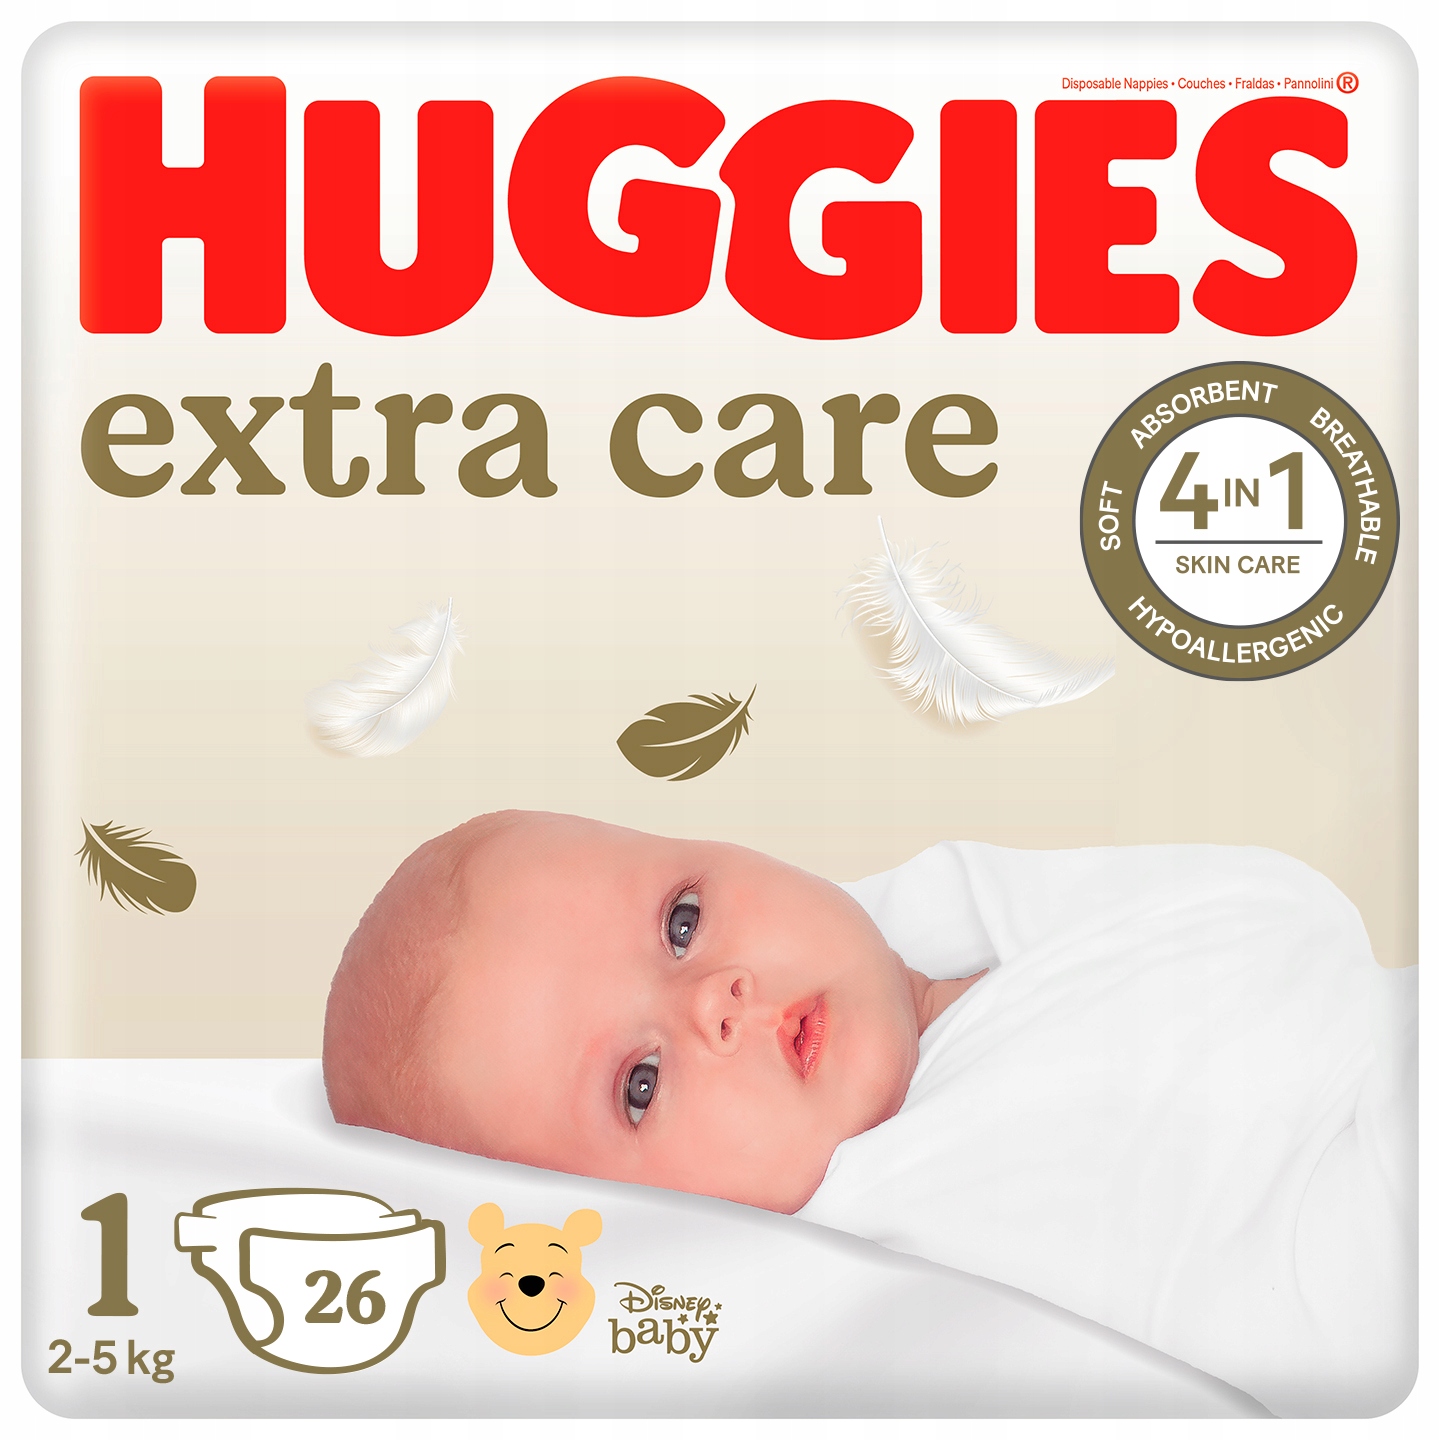 pieluszki dla dzieci huggies produkowane produkowane 1999 roku